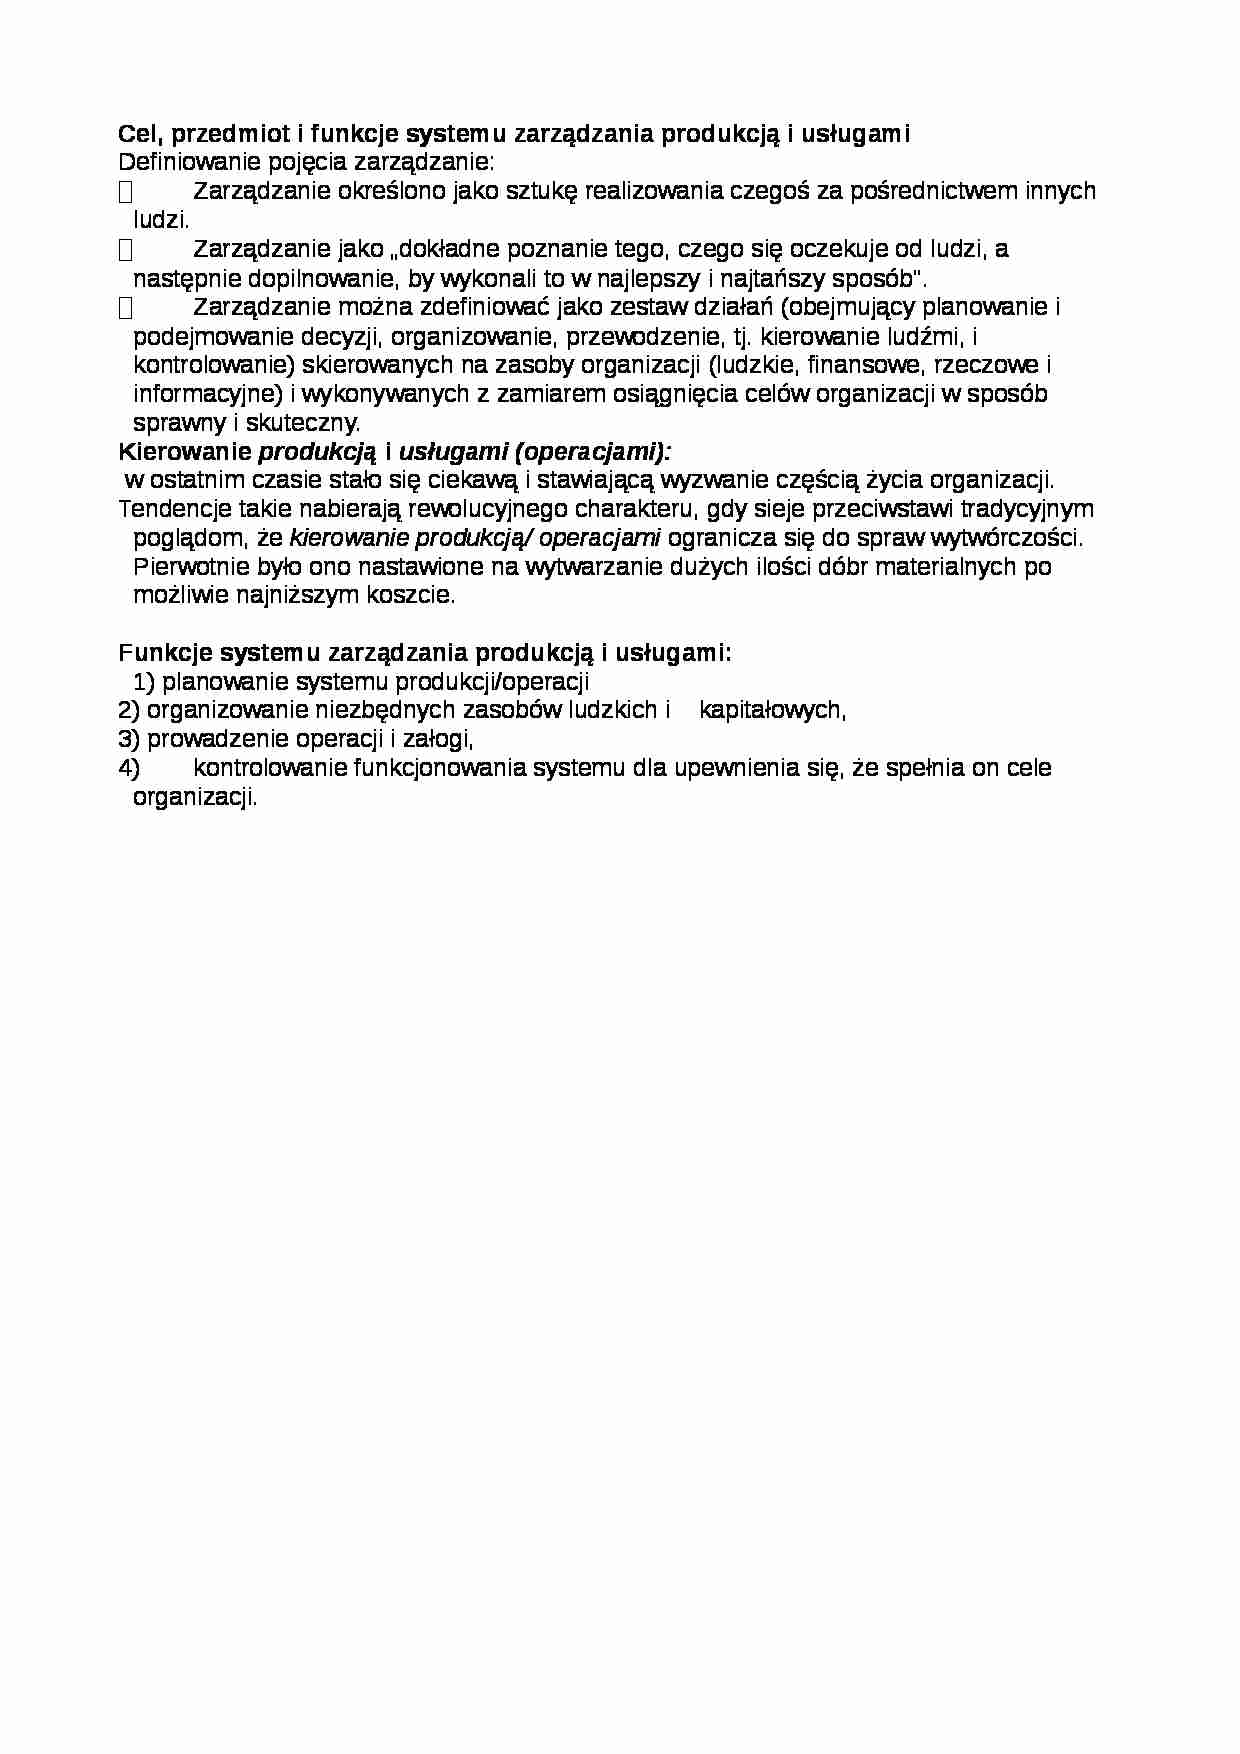 Przedmiot i funkcje systemu zarządzania - strona 1